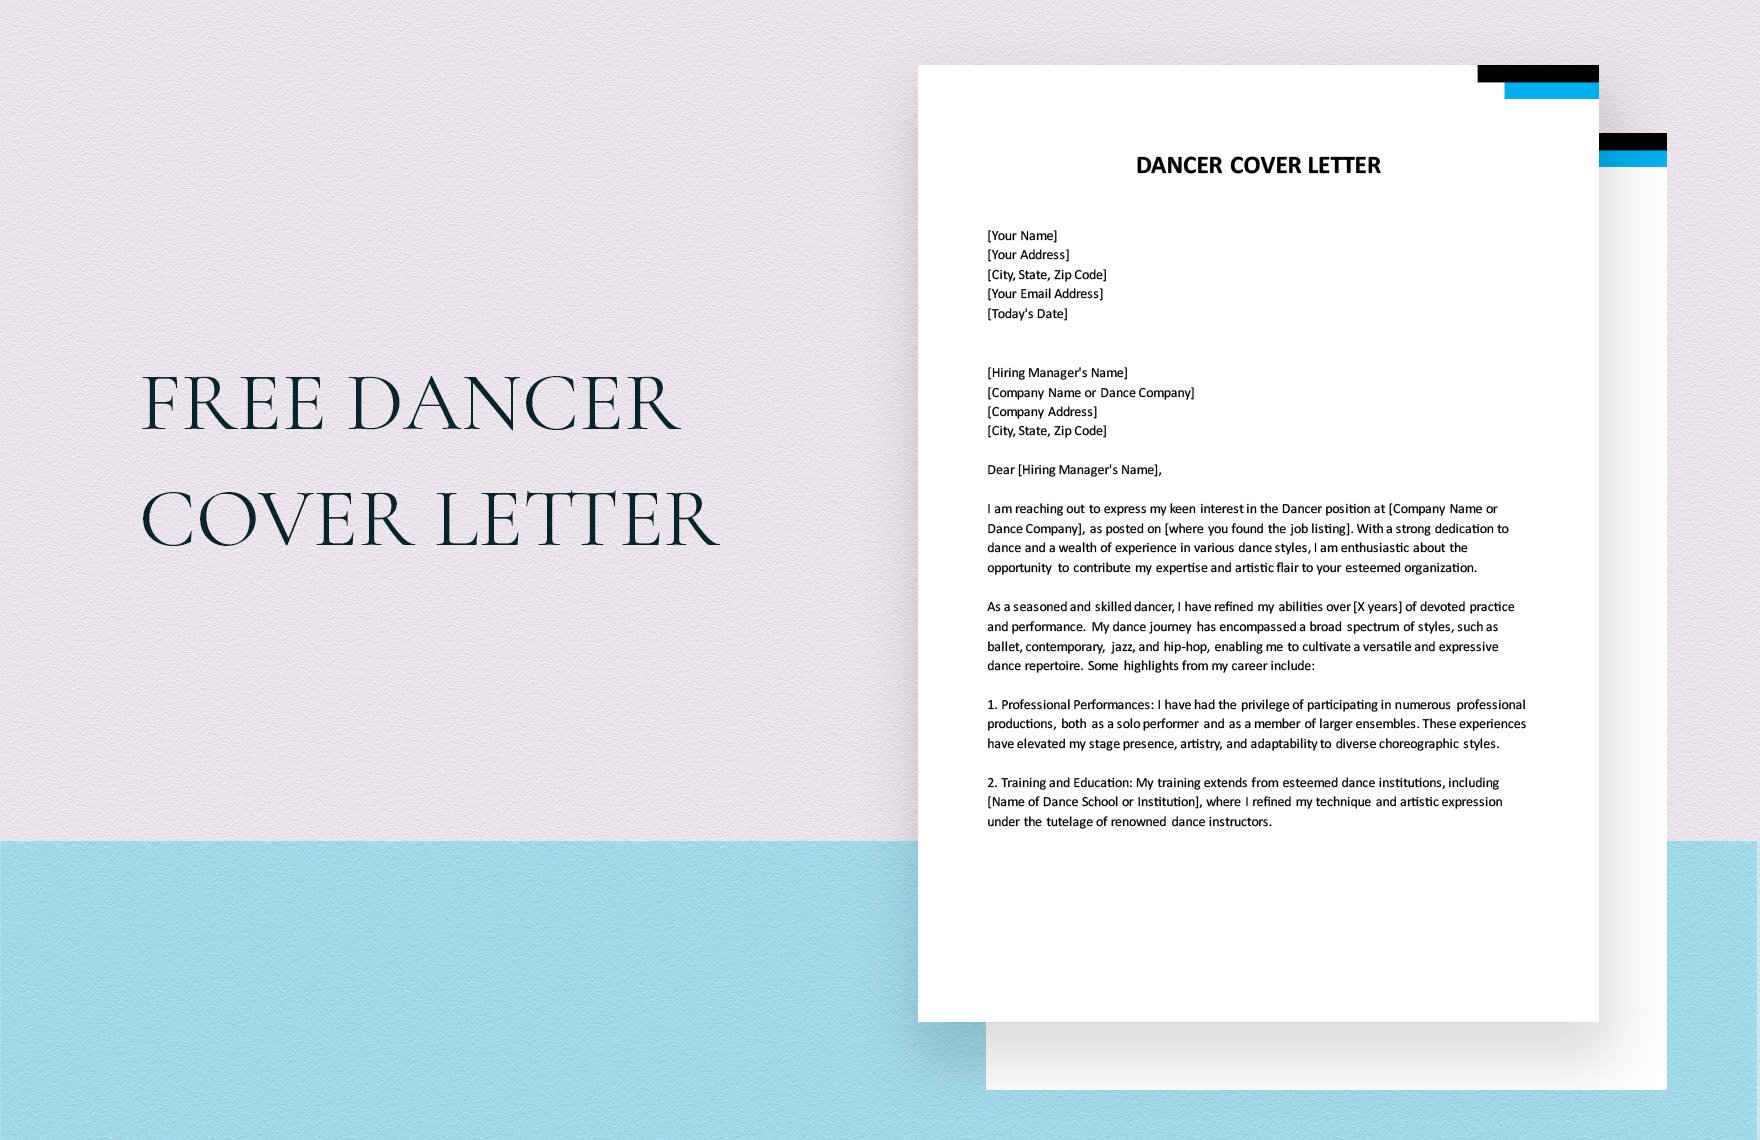 Dancer Cover Letter in Word, Google Docs, PDF